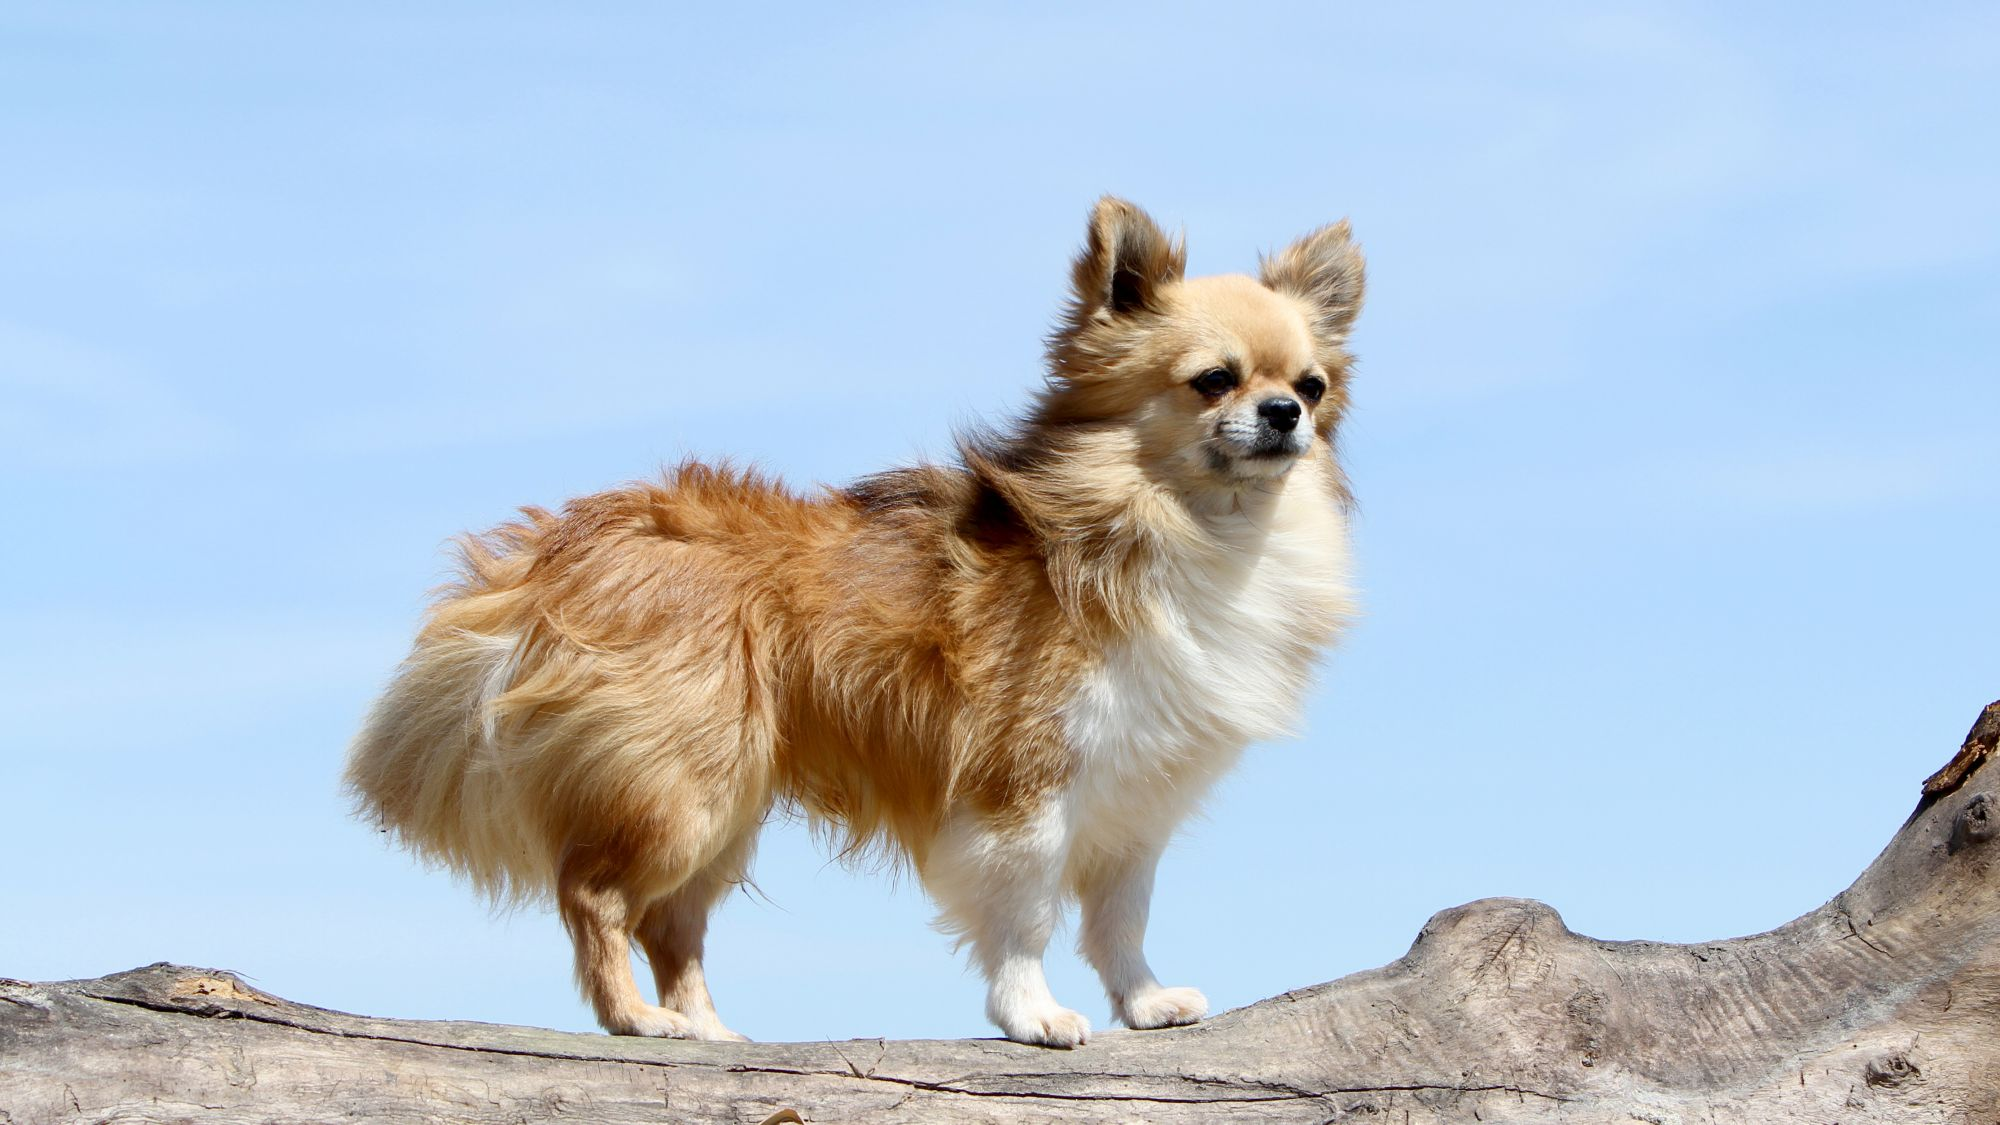 Bej renkli uzun tüylü Chihuahua, bir kütüğün üzerinde duruyor